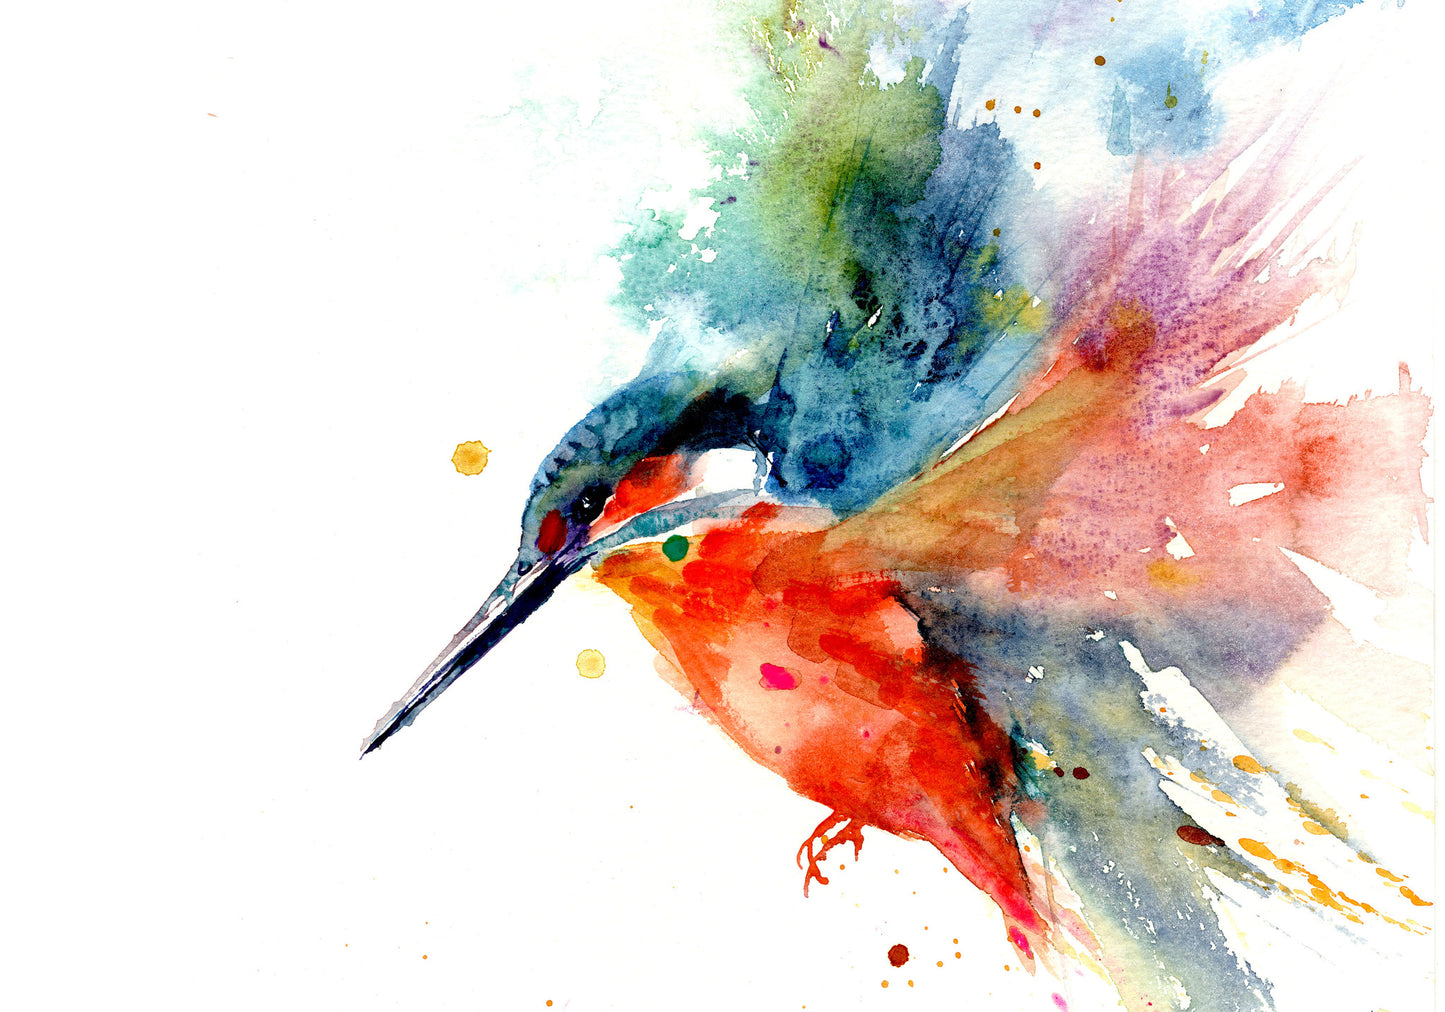 Kingfisher print by Jen Buckley